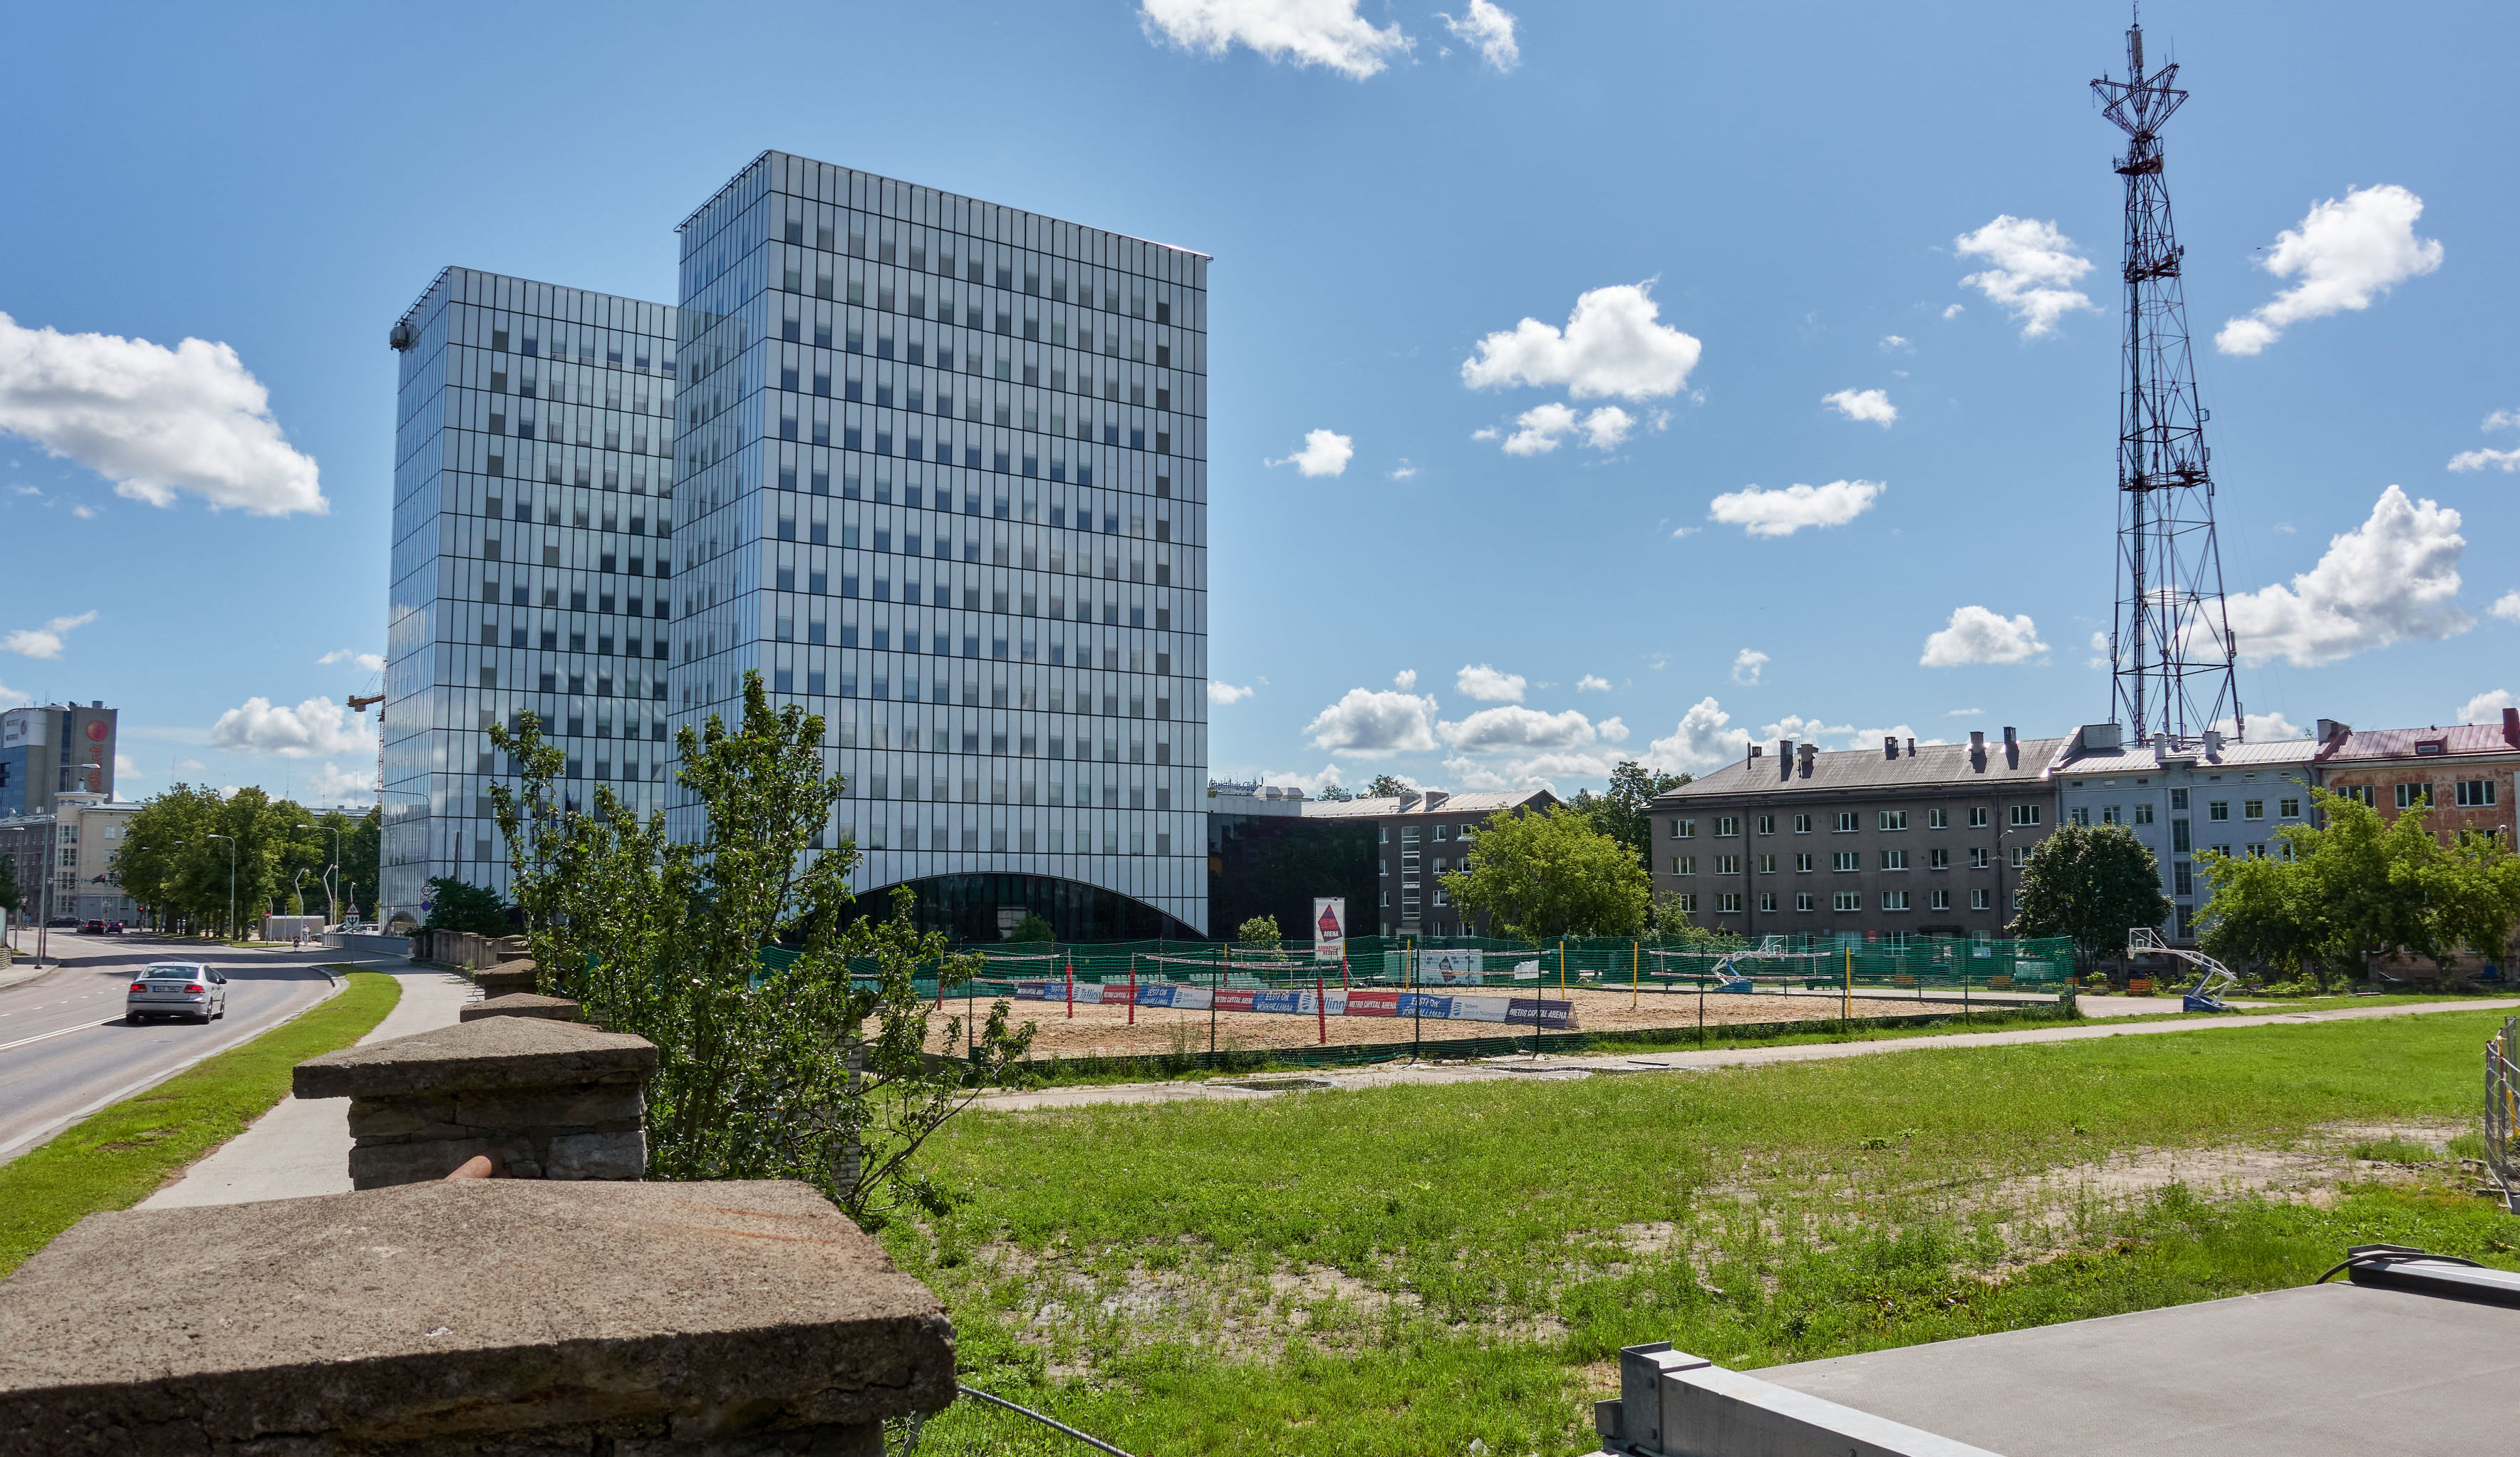 Территория за зданием Суперминистерства, на которой планируется построить новое здание посольства США в Эстонии